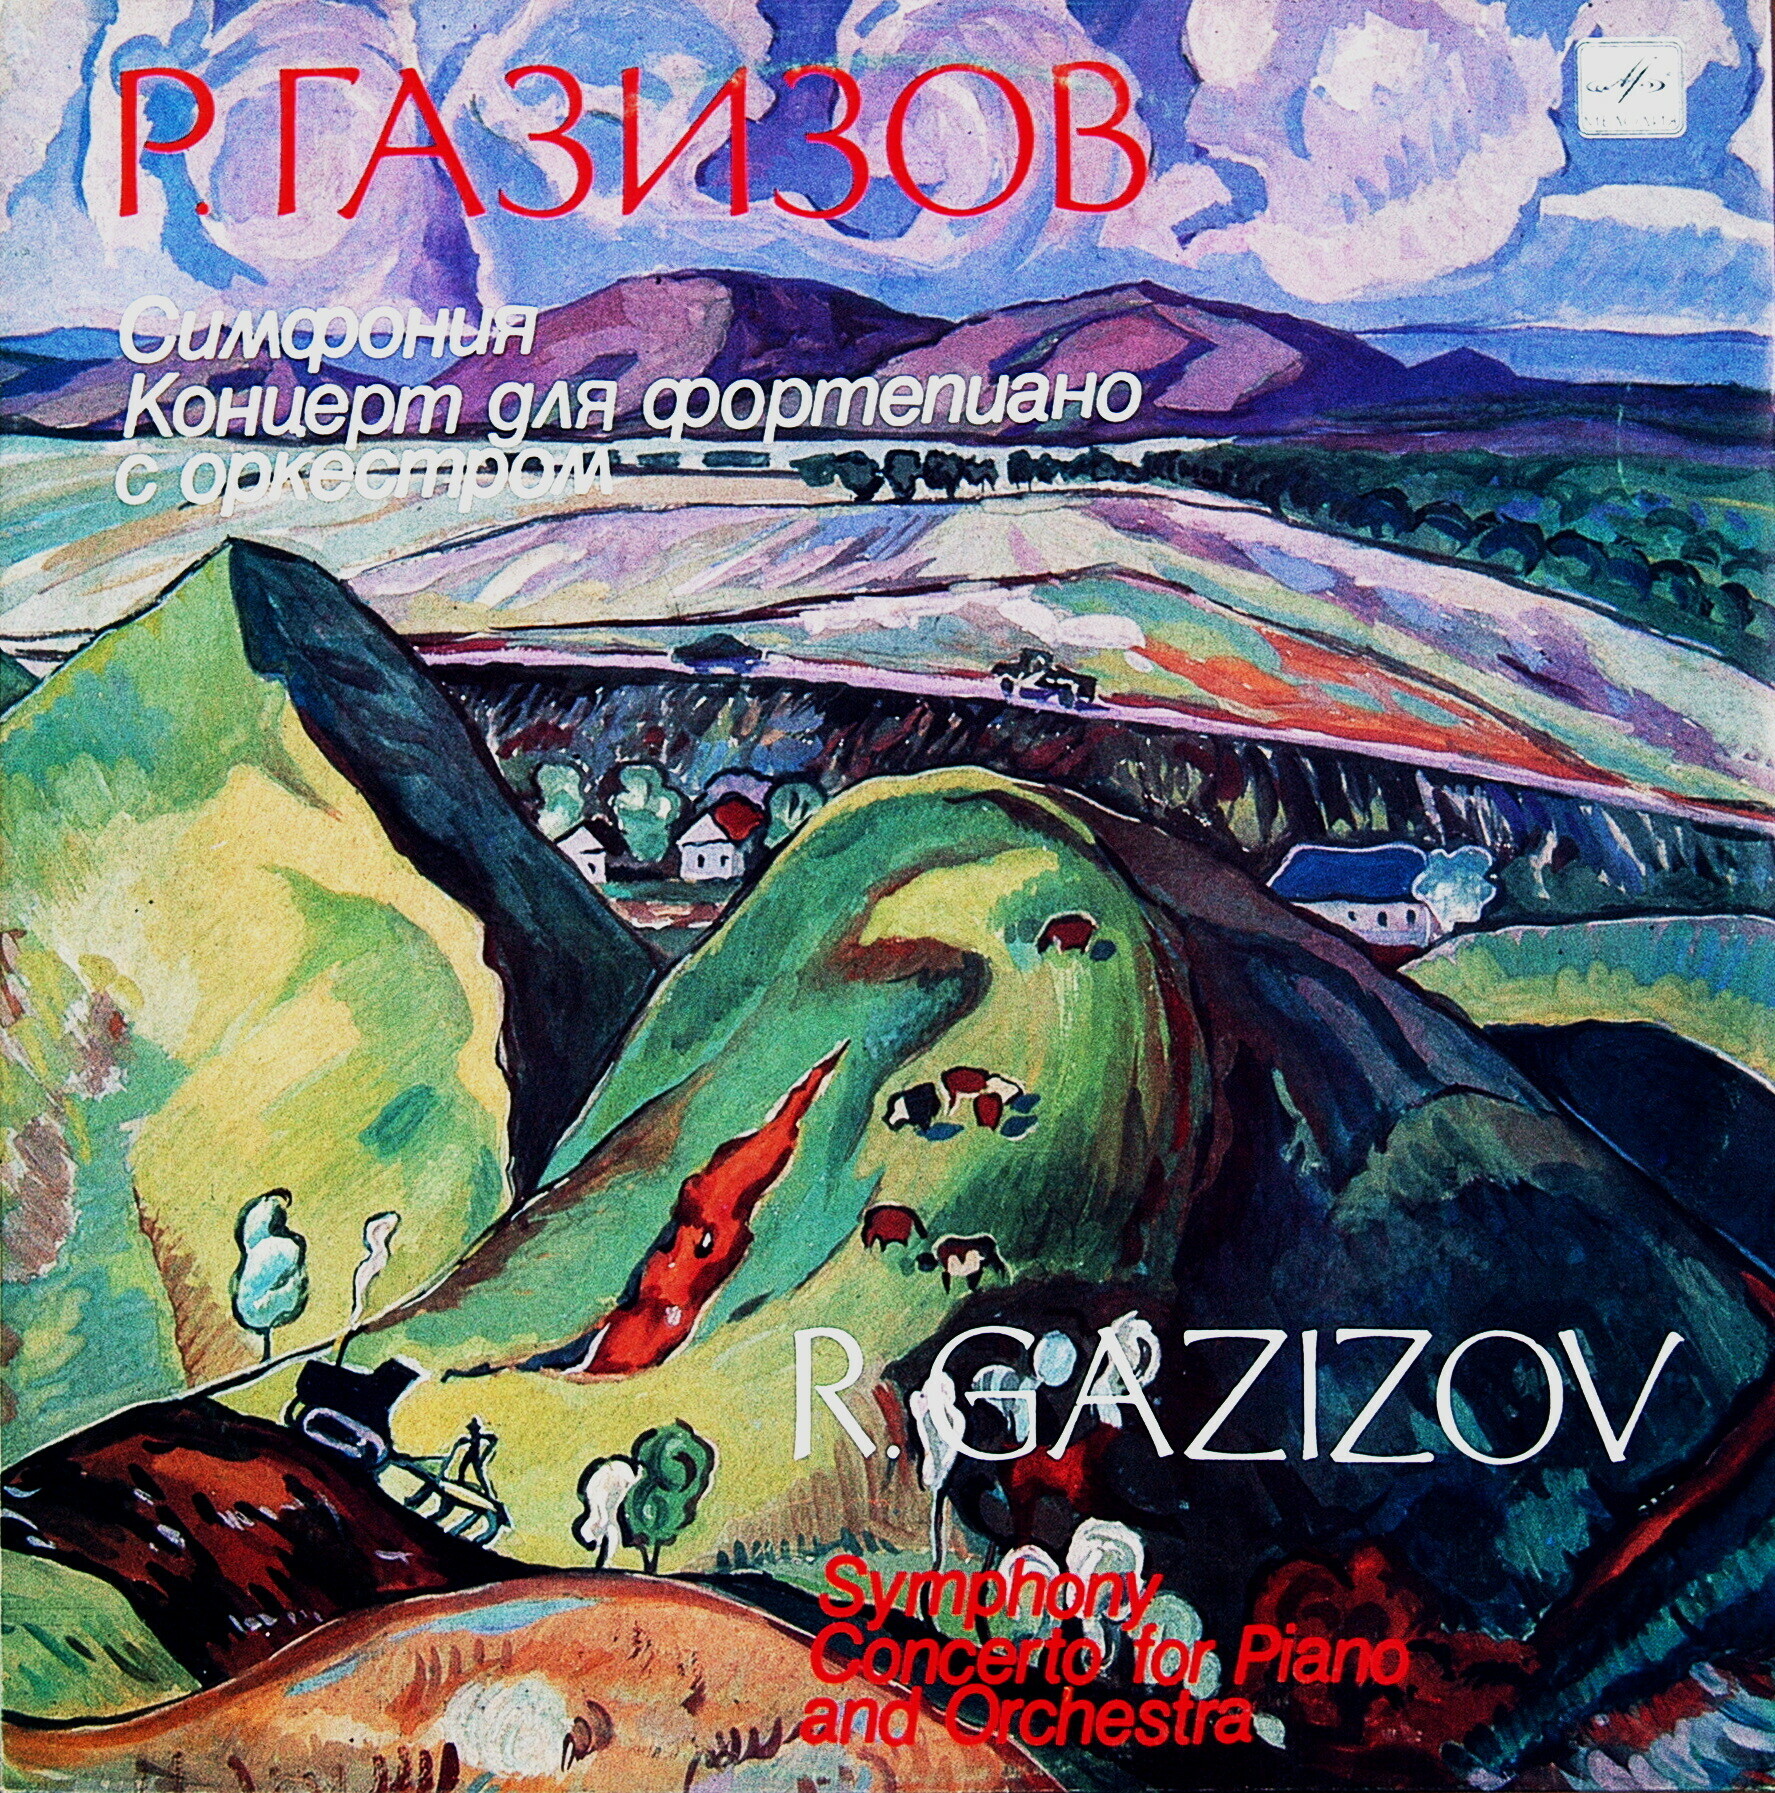 Р. ГА3ИЗОВ (1939). Симфония. Концерт для фортепиано с оркестром